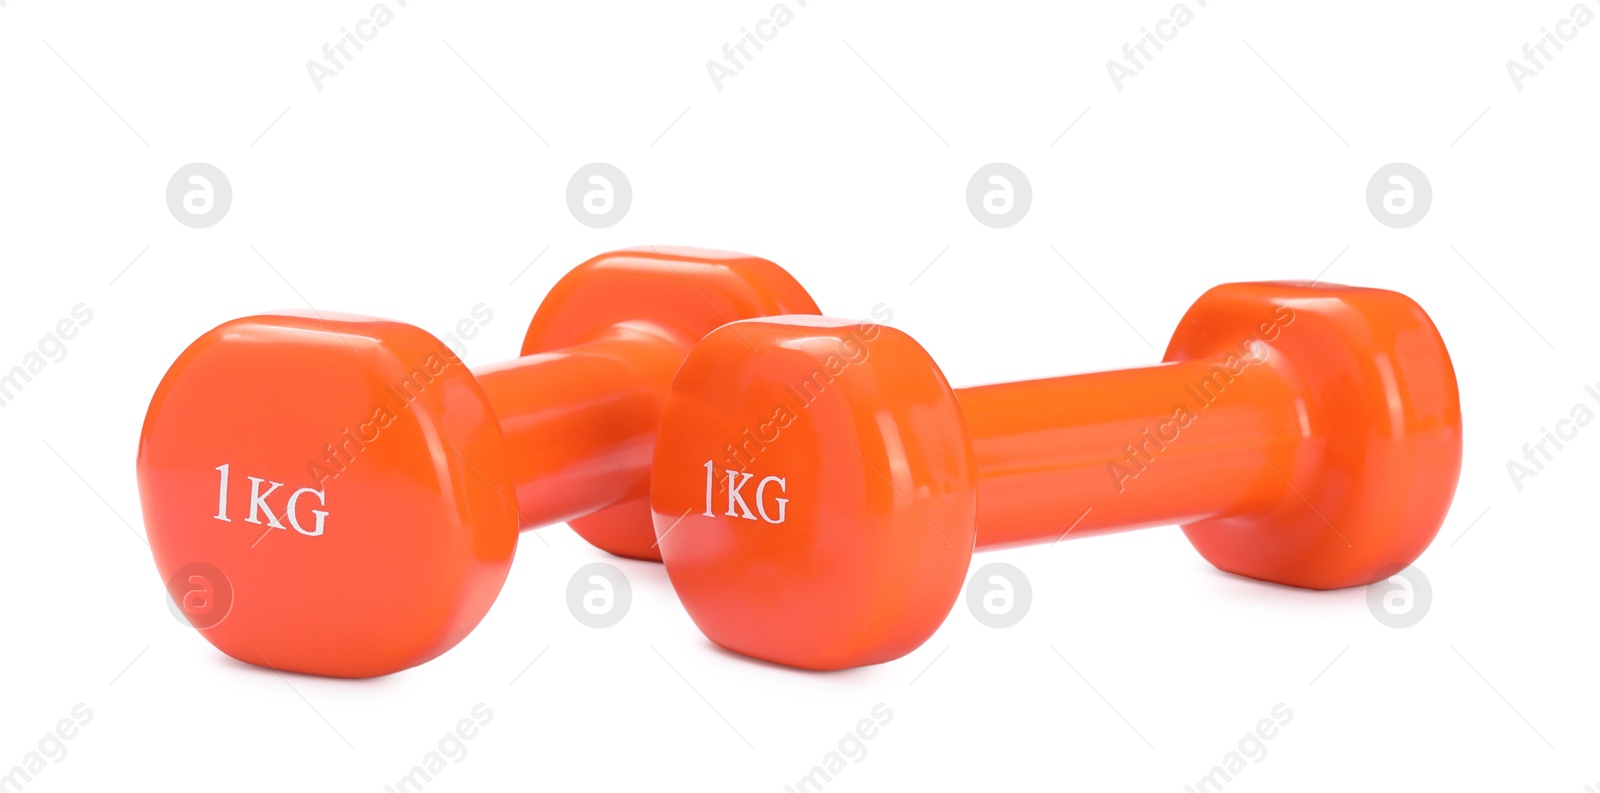 Photo of Orange dumbbells isolated on white. Sports equipment